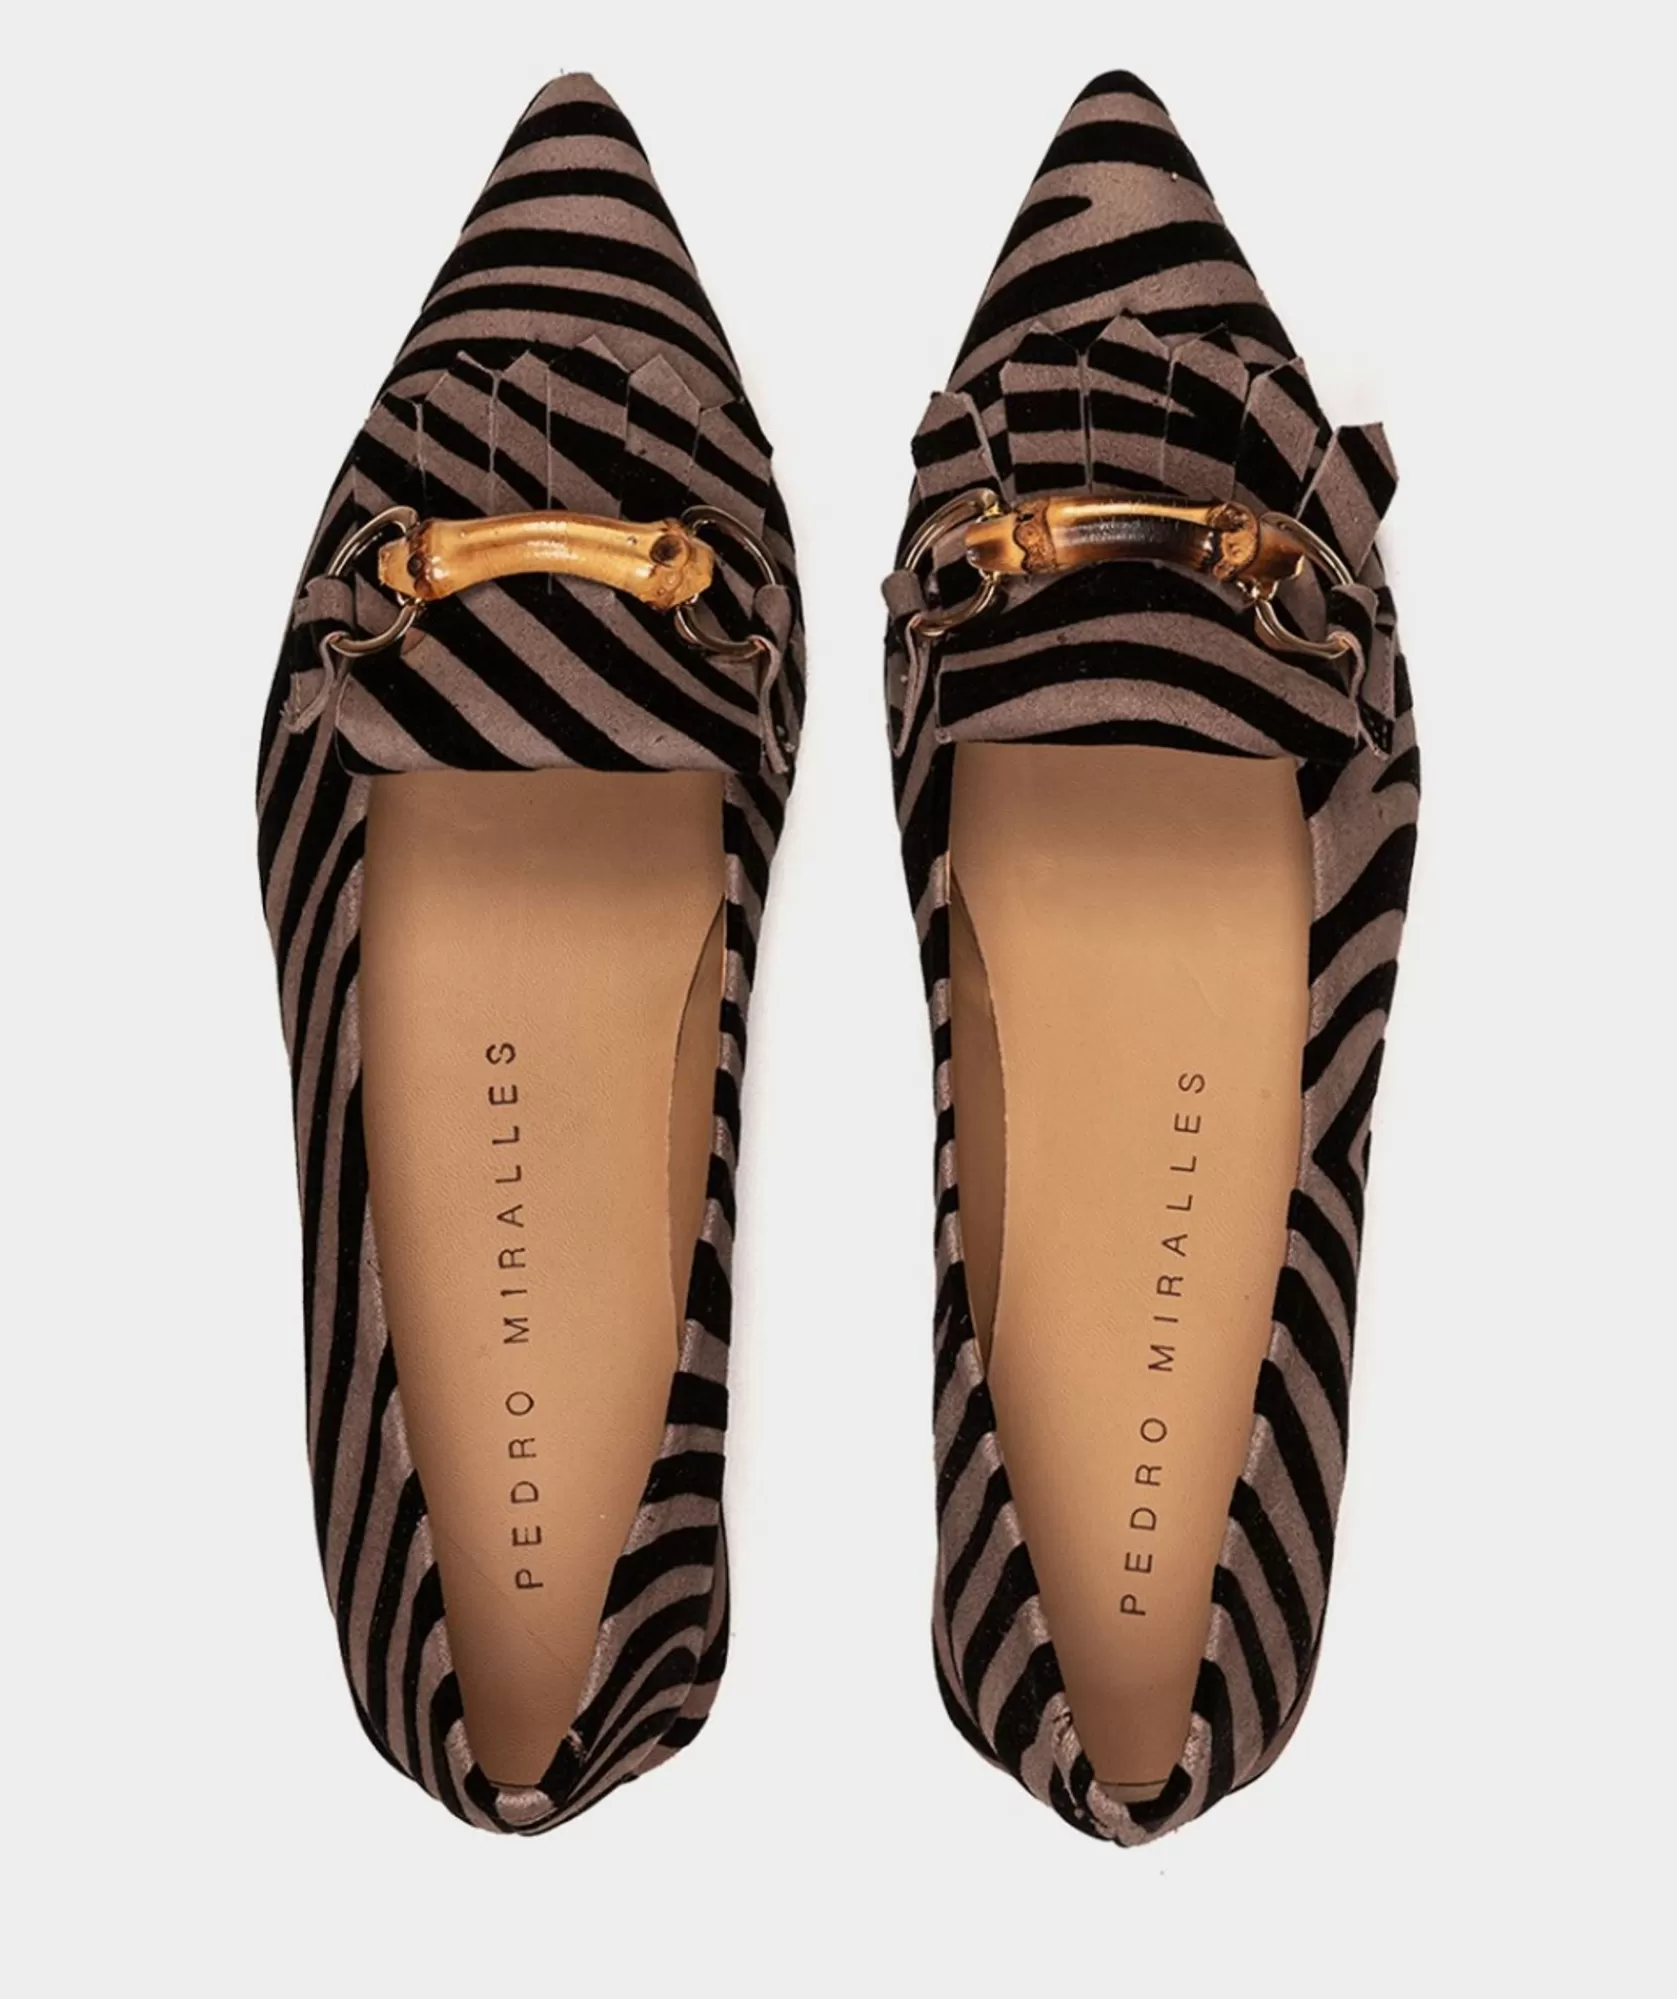 Calzado Pedro Miralles Bailarinas Fabricadas En Piel Con Estampado Animal Print Zebra Acero